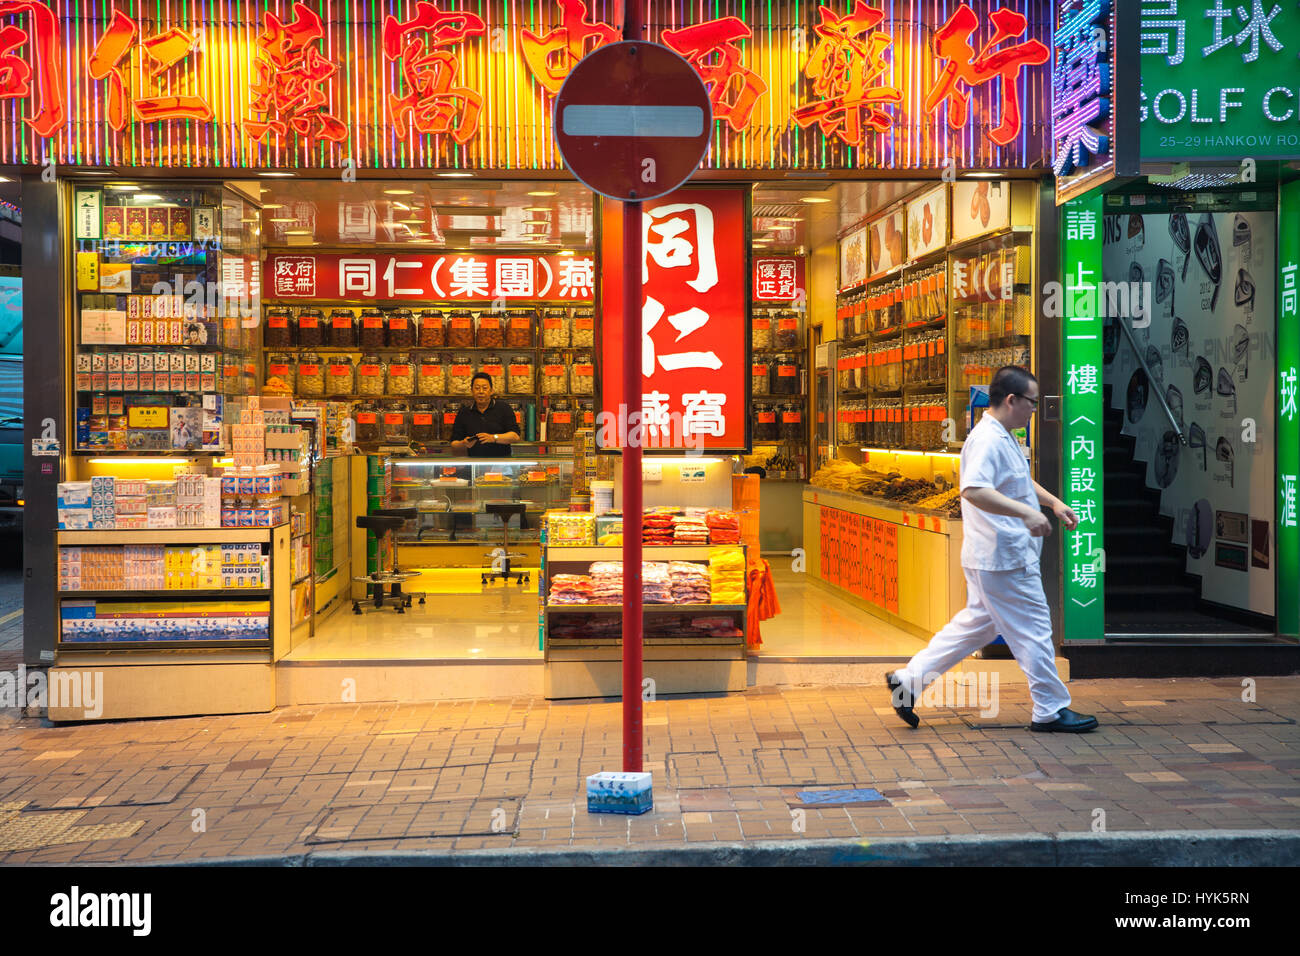 Hong Kong, China - 16. Februar 2014: Mann vergeht Neon-beleuchtete traditionelle chinesische Medizin Shop am 16. Februar 2014 in Hong Kong, China. Stockfoto